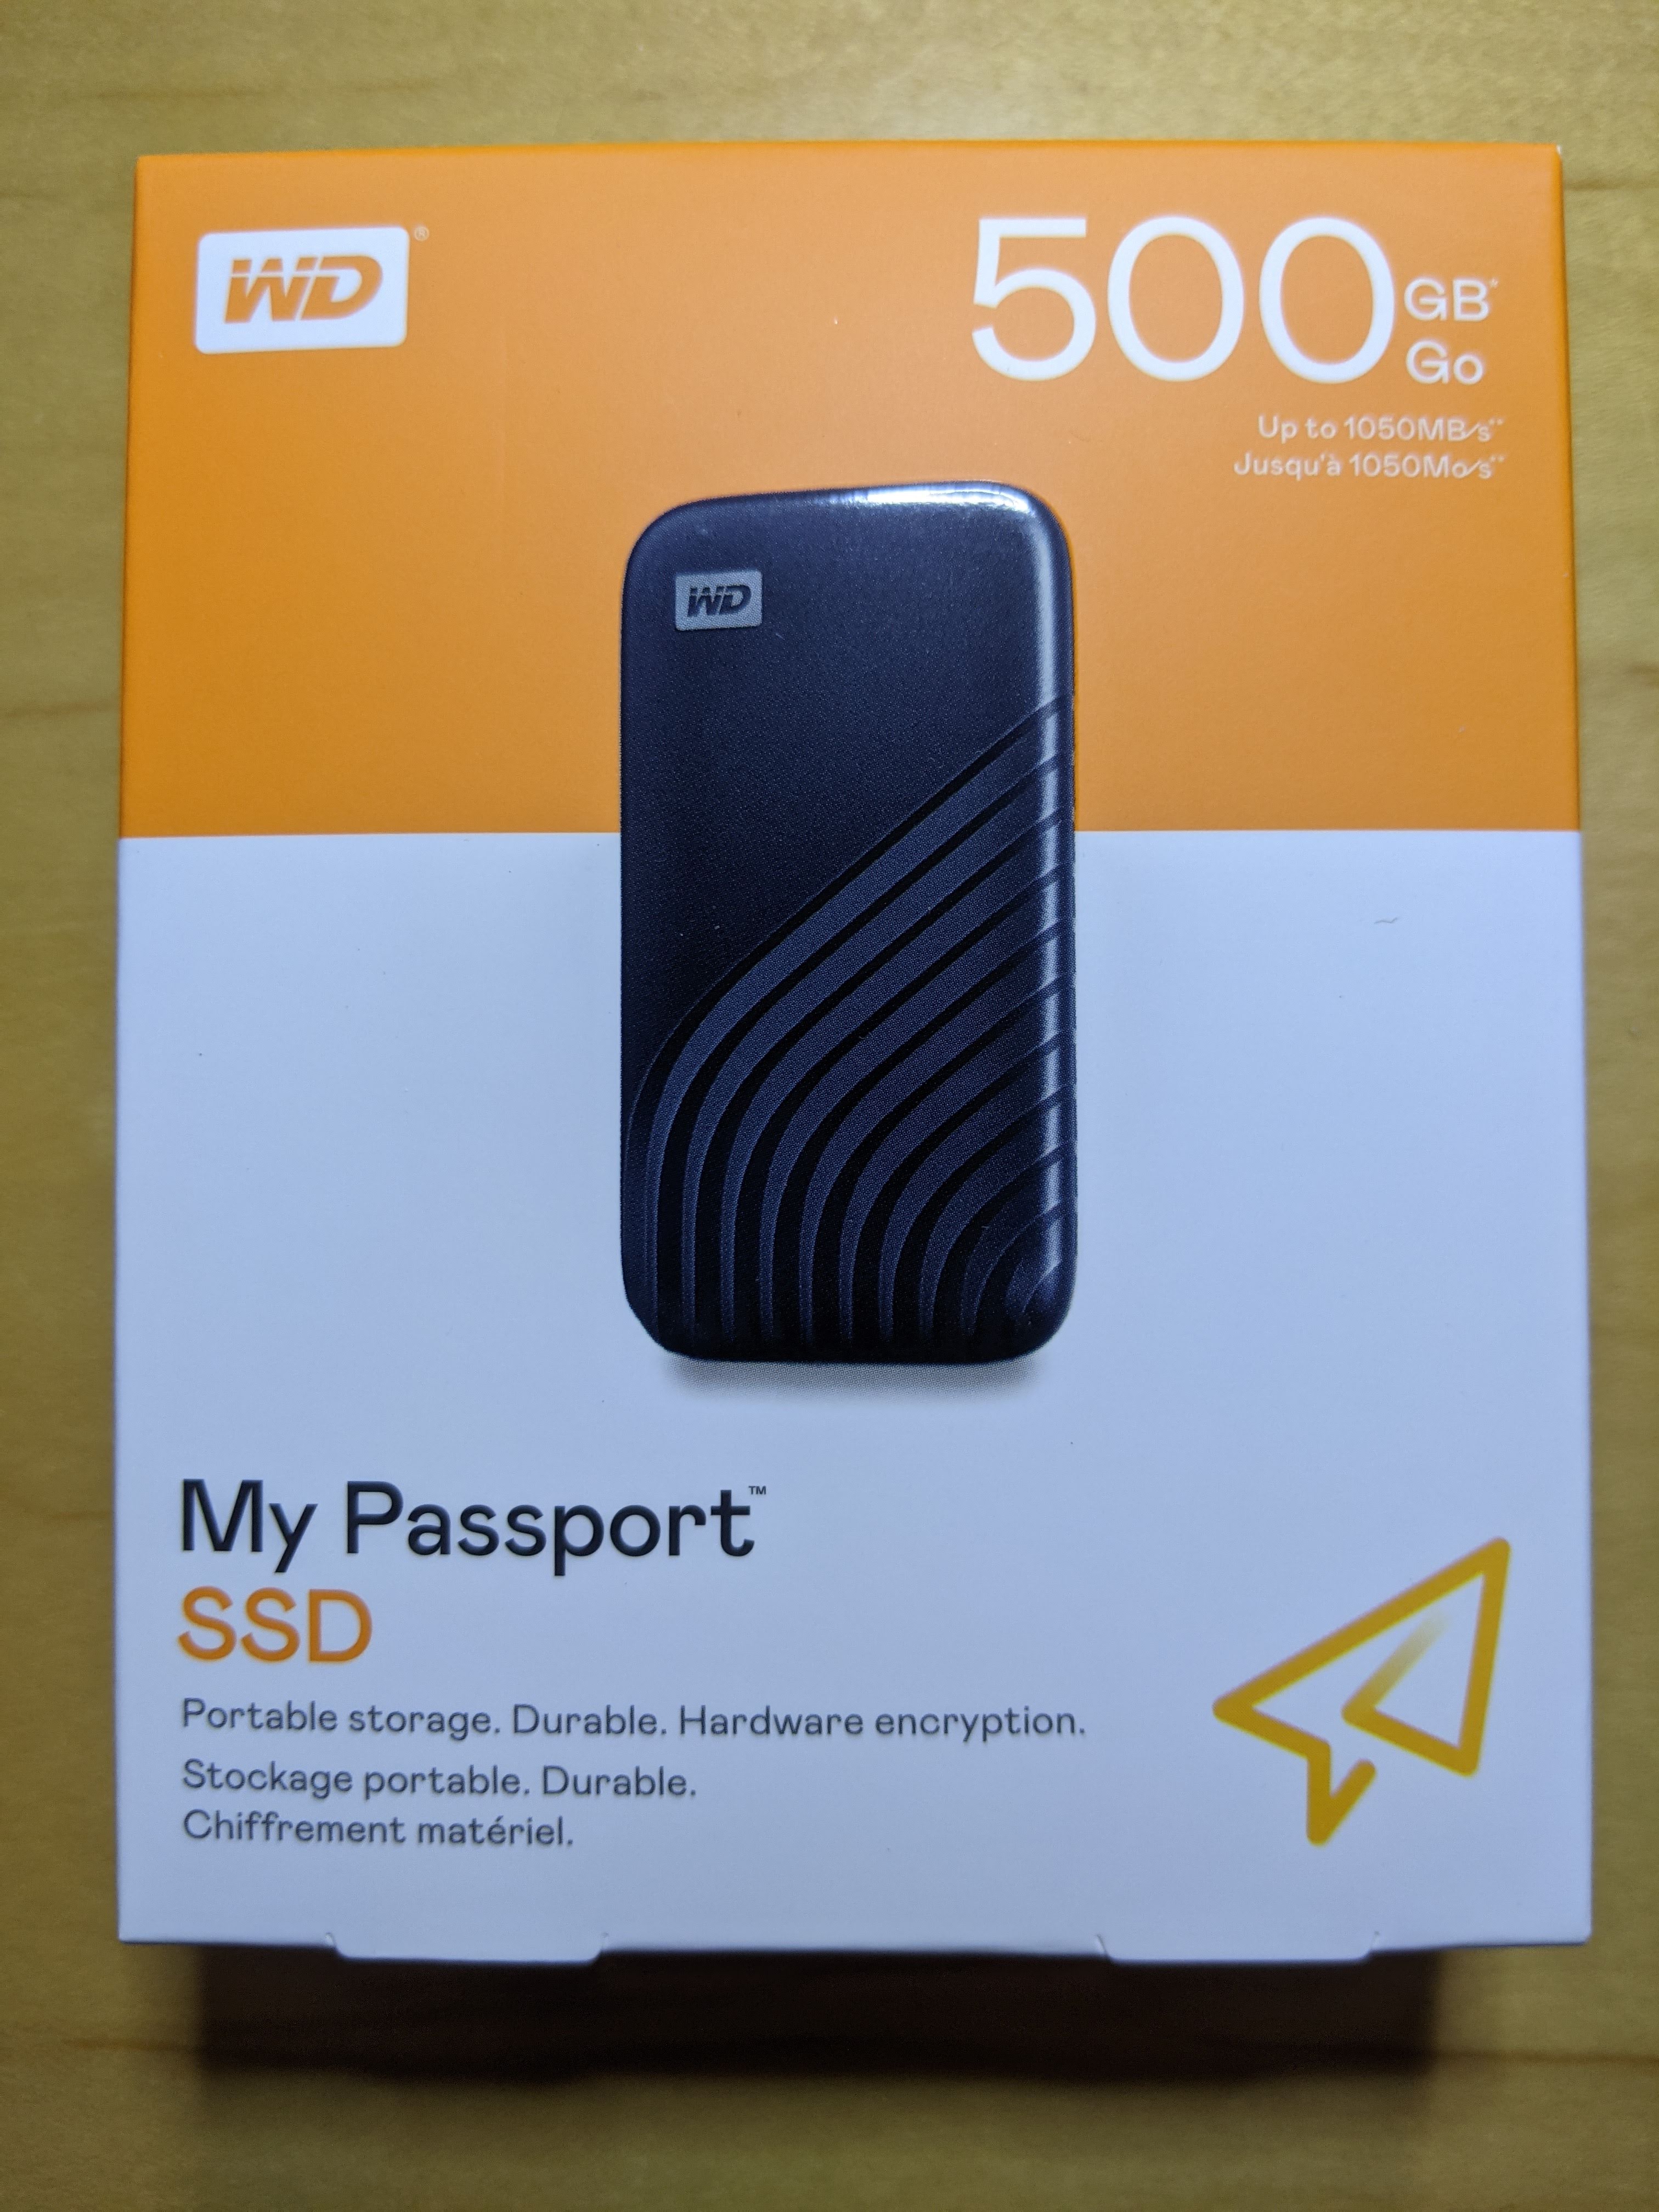 パソコン日和: WD My Passport SSD 500GB(WDBAGF5000ABL-WESN) を購入しました！